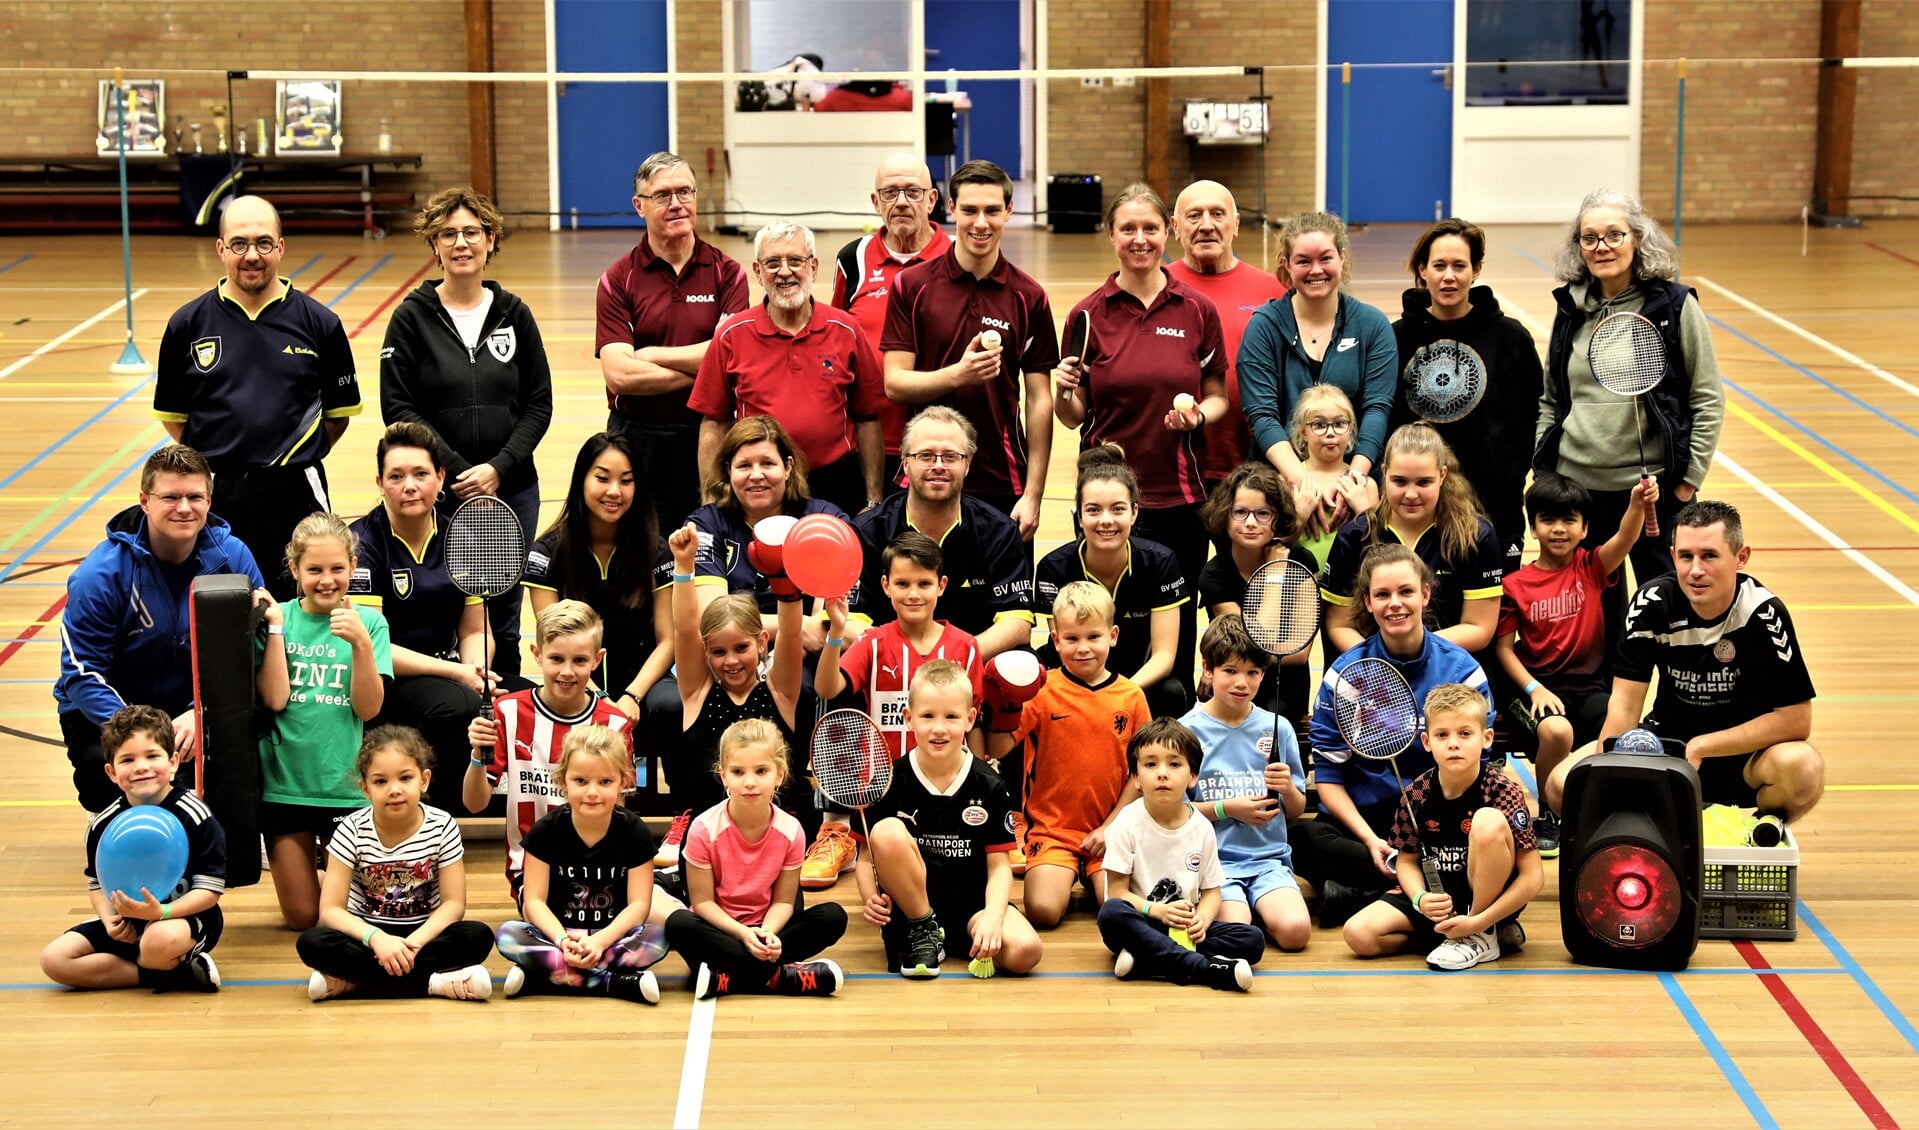 Basisschooljeugd kon in Mierlo kennismaken met verschillende sporten. (Foto: Harrie van der Sanden)